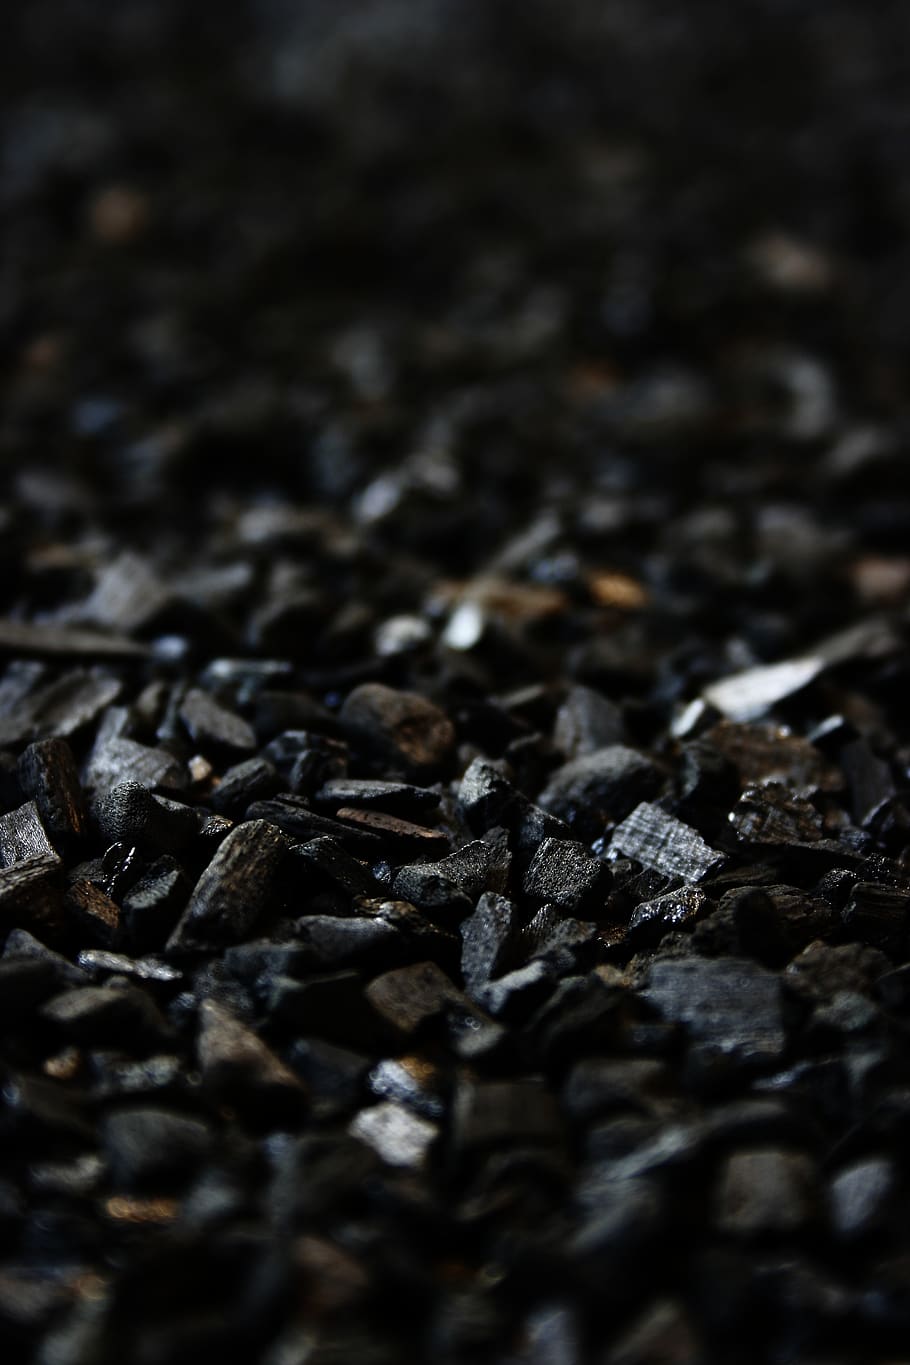 Black Charcoals, blur, briquettes, carbon, close-up, selective focus